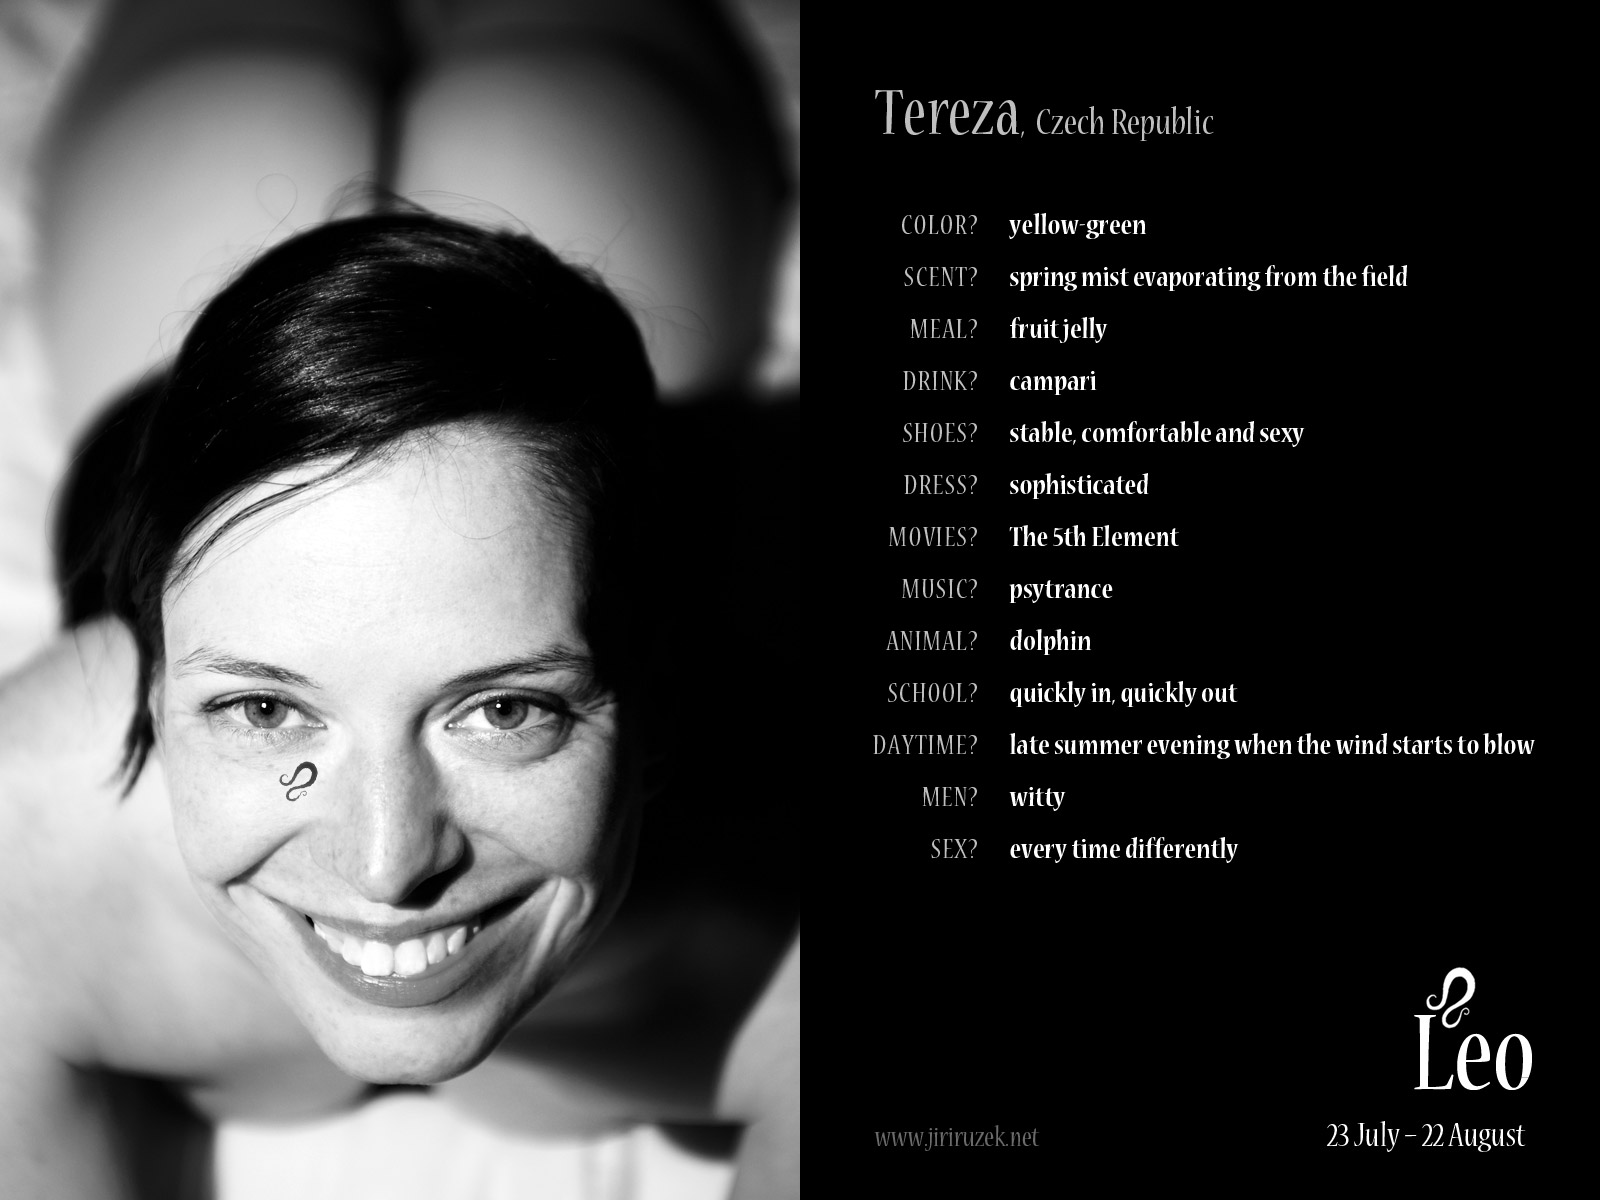 Tereza (Czech Republic) by Jiri Ruzek, 2012